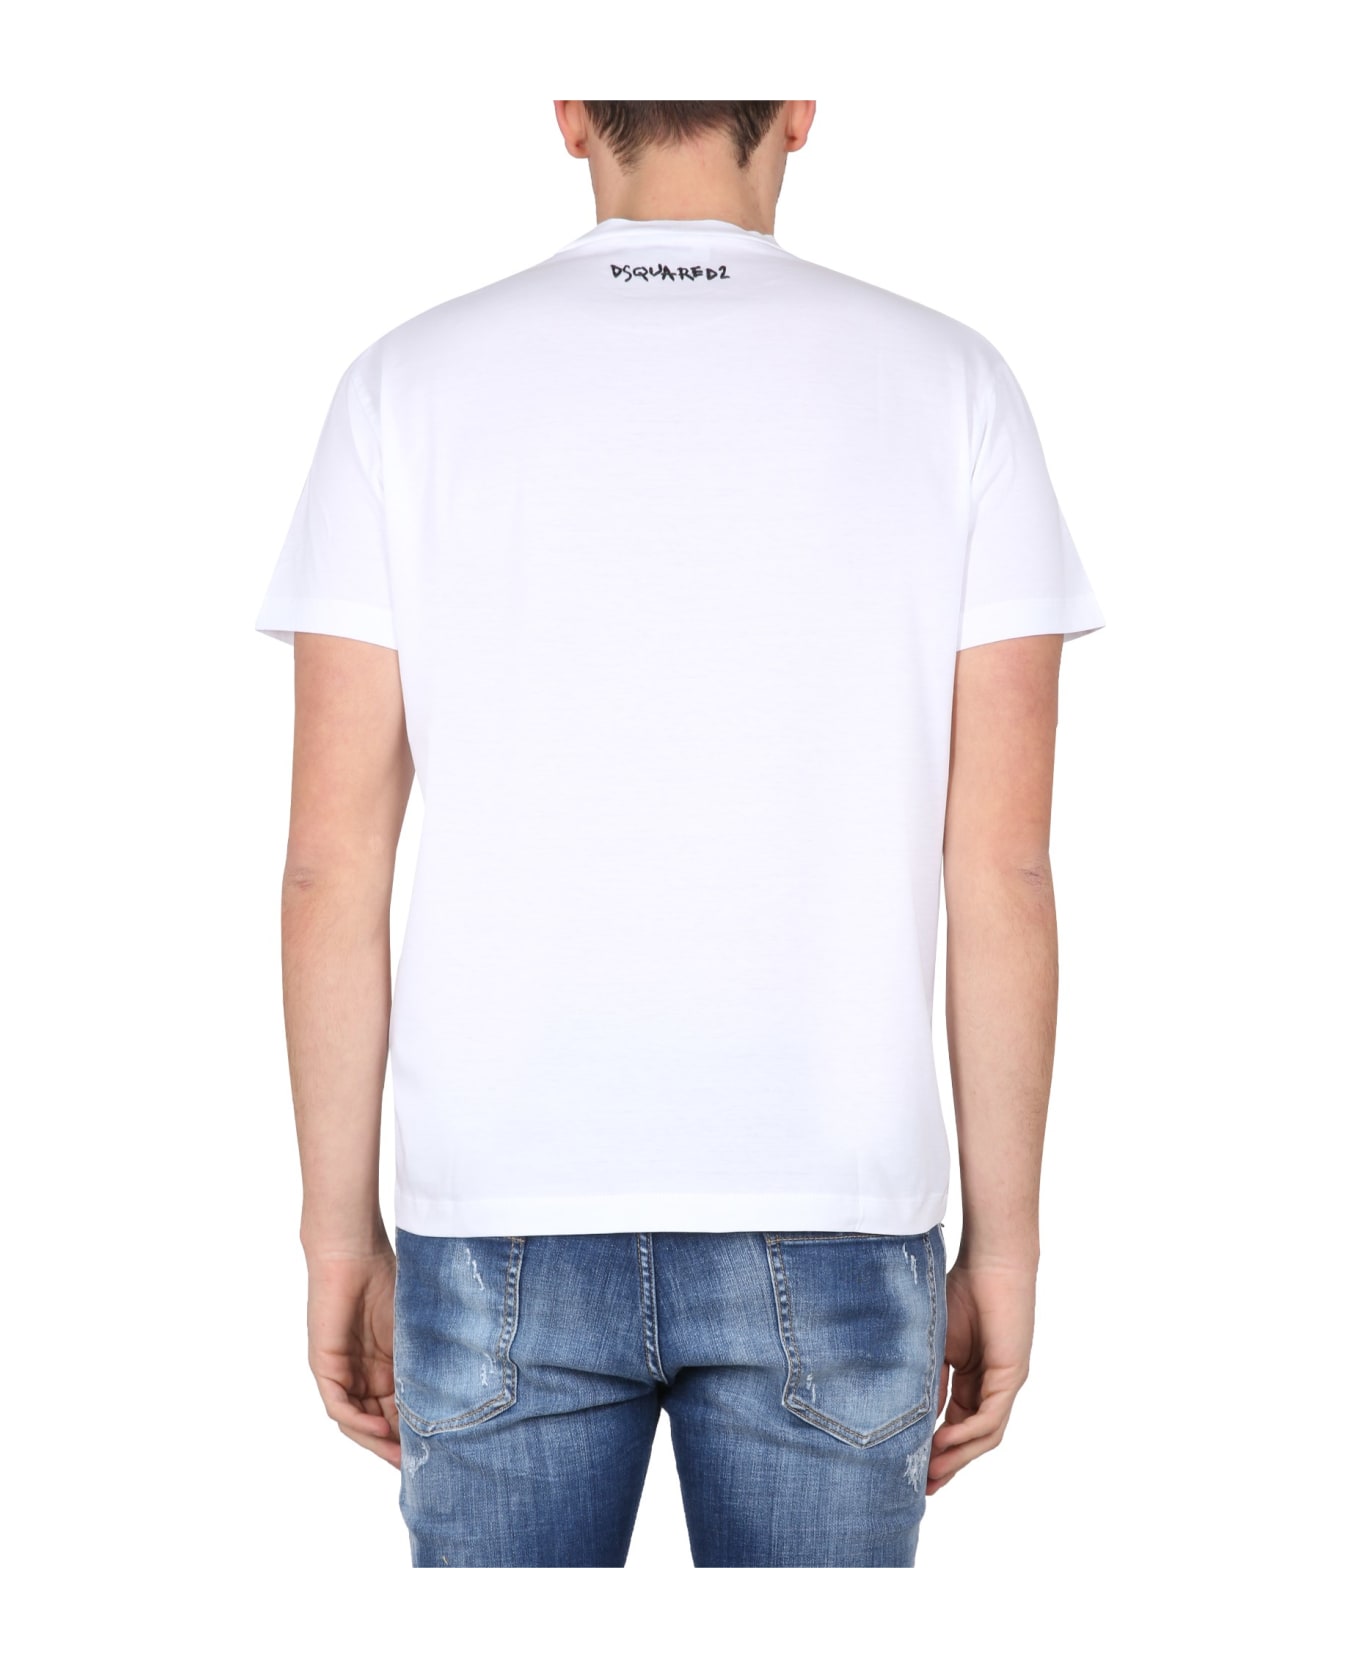 Dsquared2 White Cotton T-shirt - Bianco シャツ